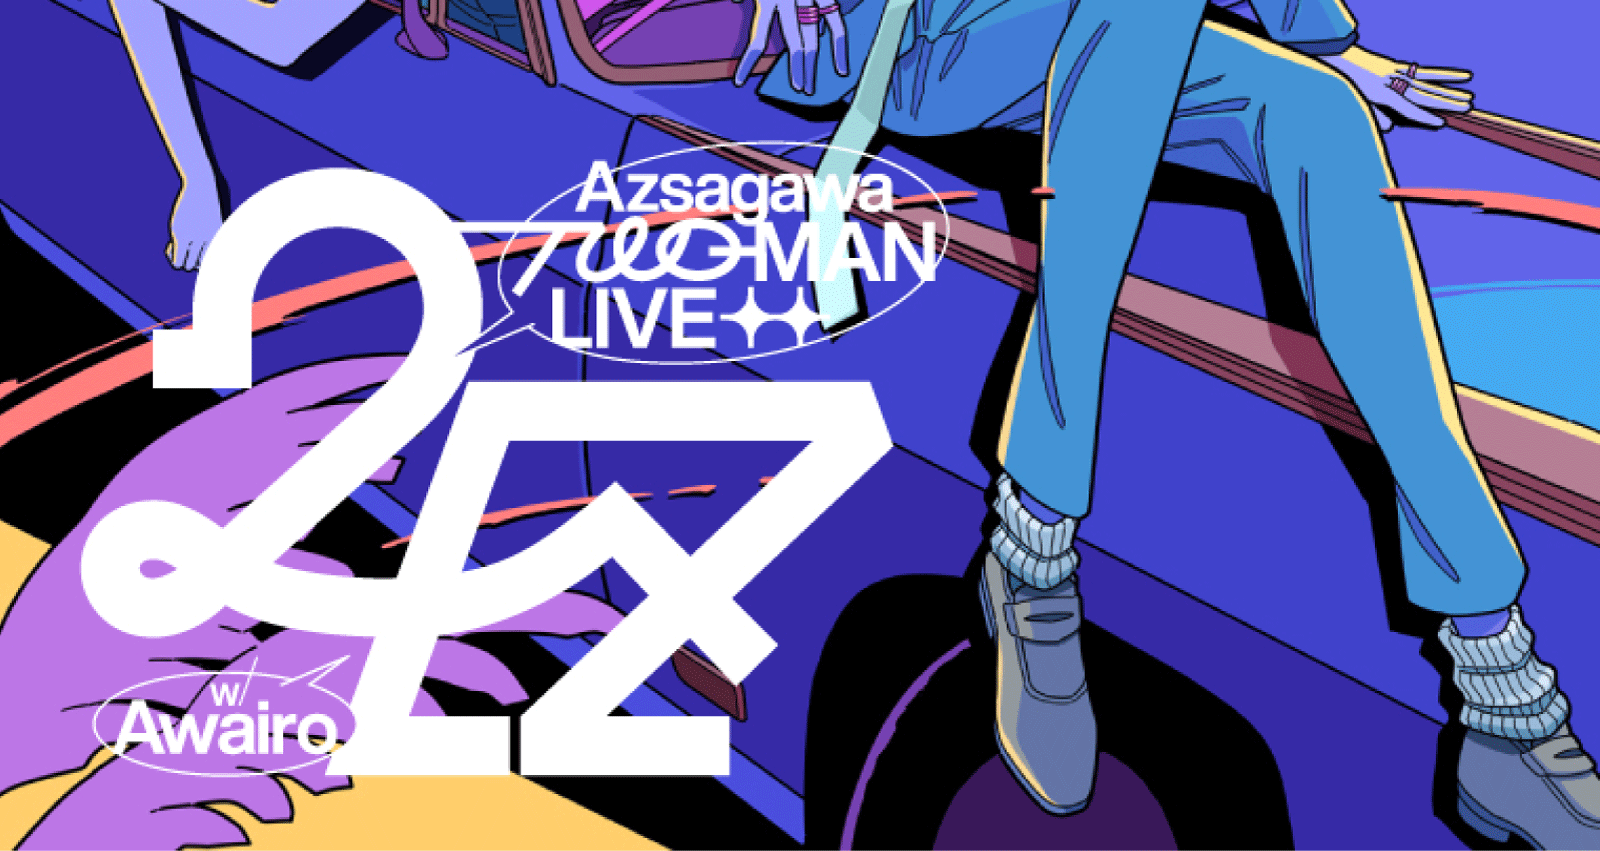 梓川 2MAN LIVE -2EZ w/ Awairo-